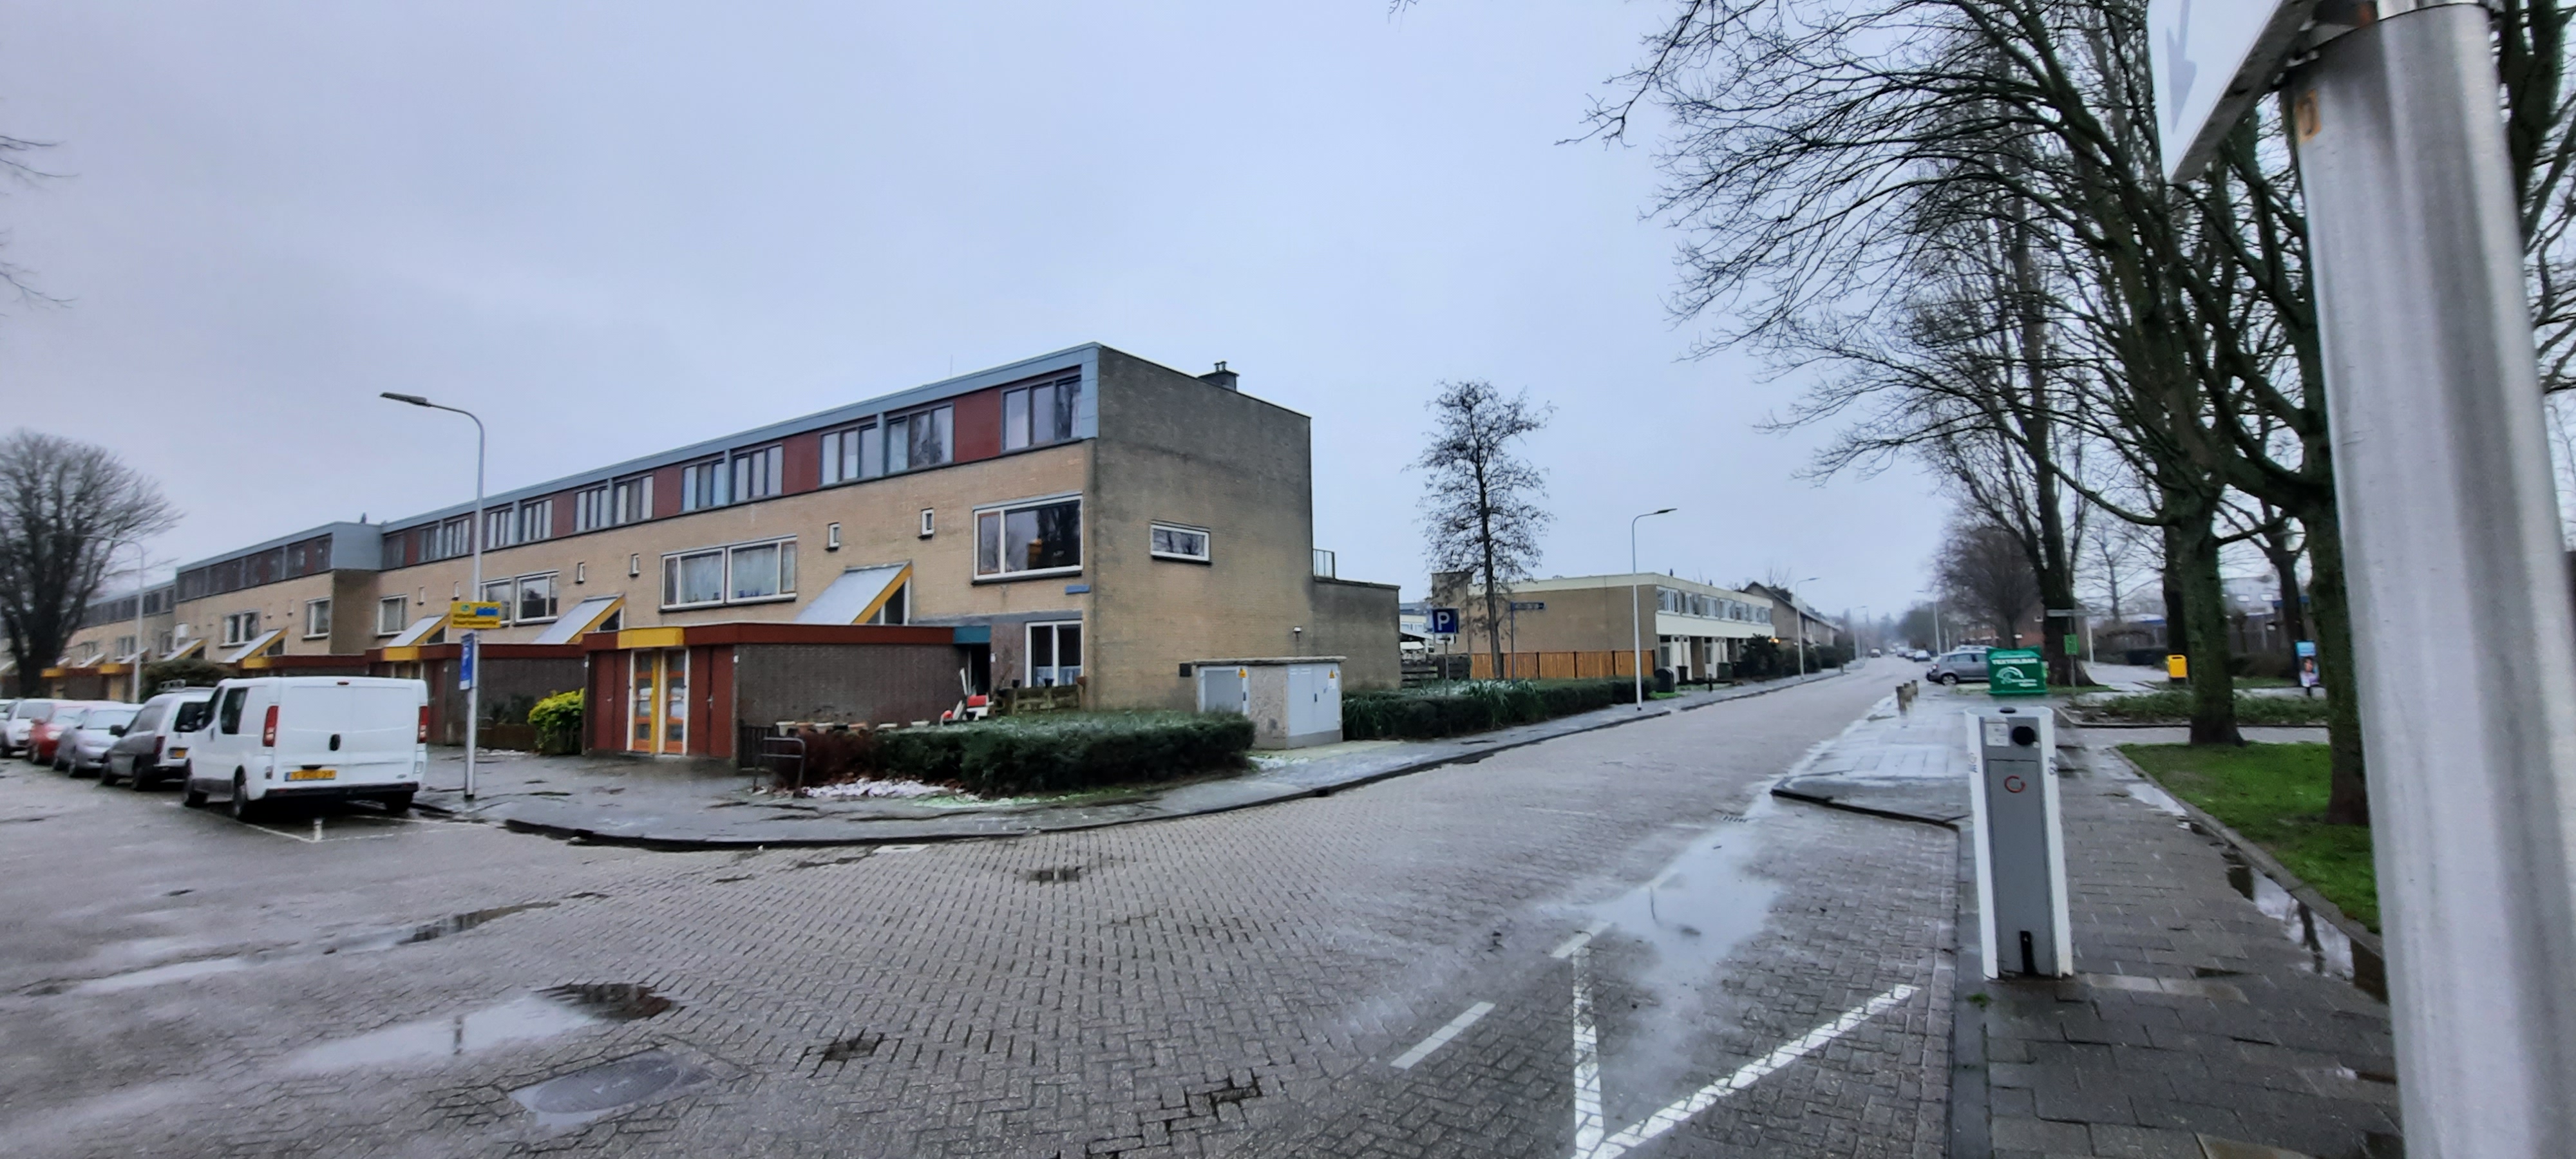 Ridderhoflaan 78